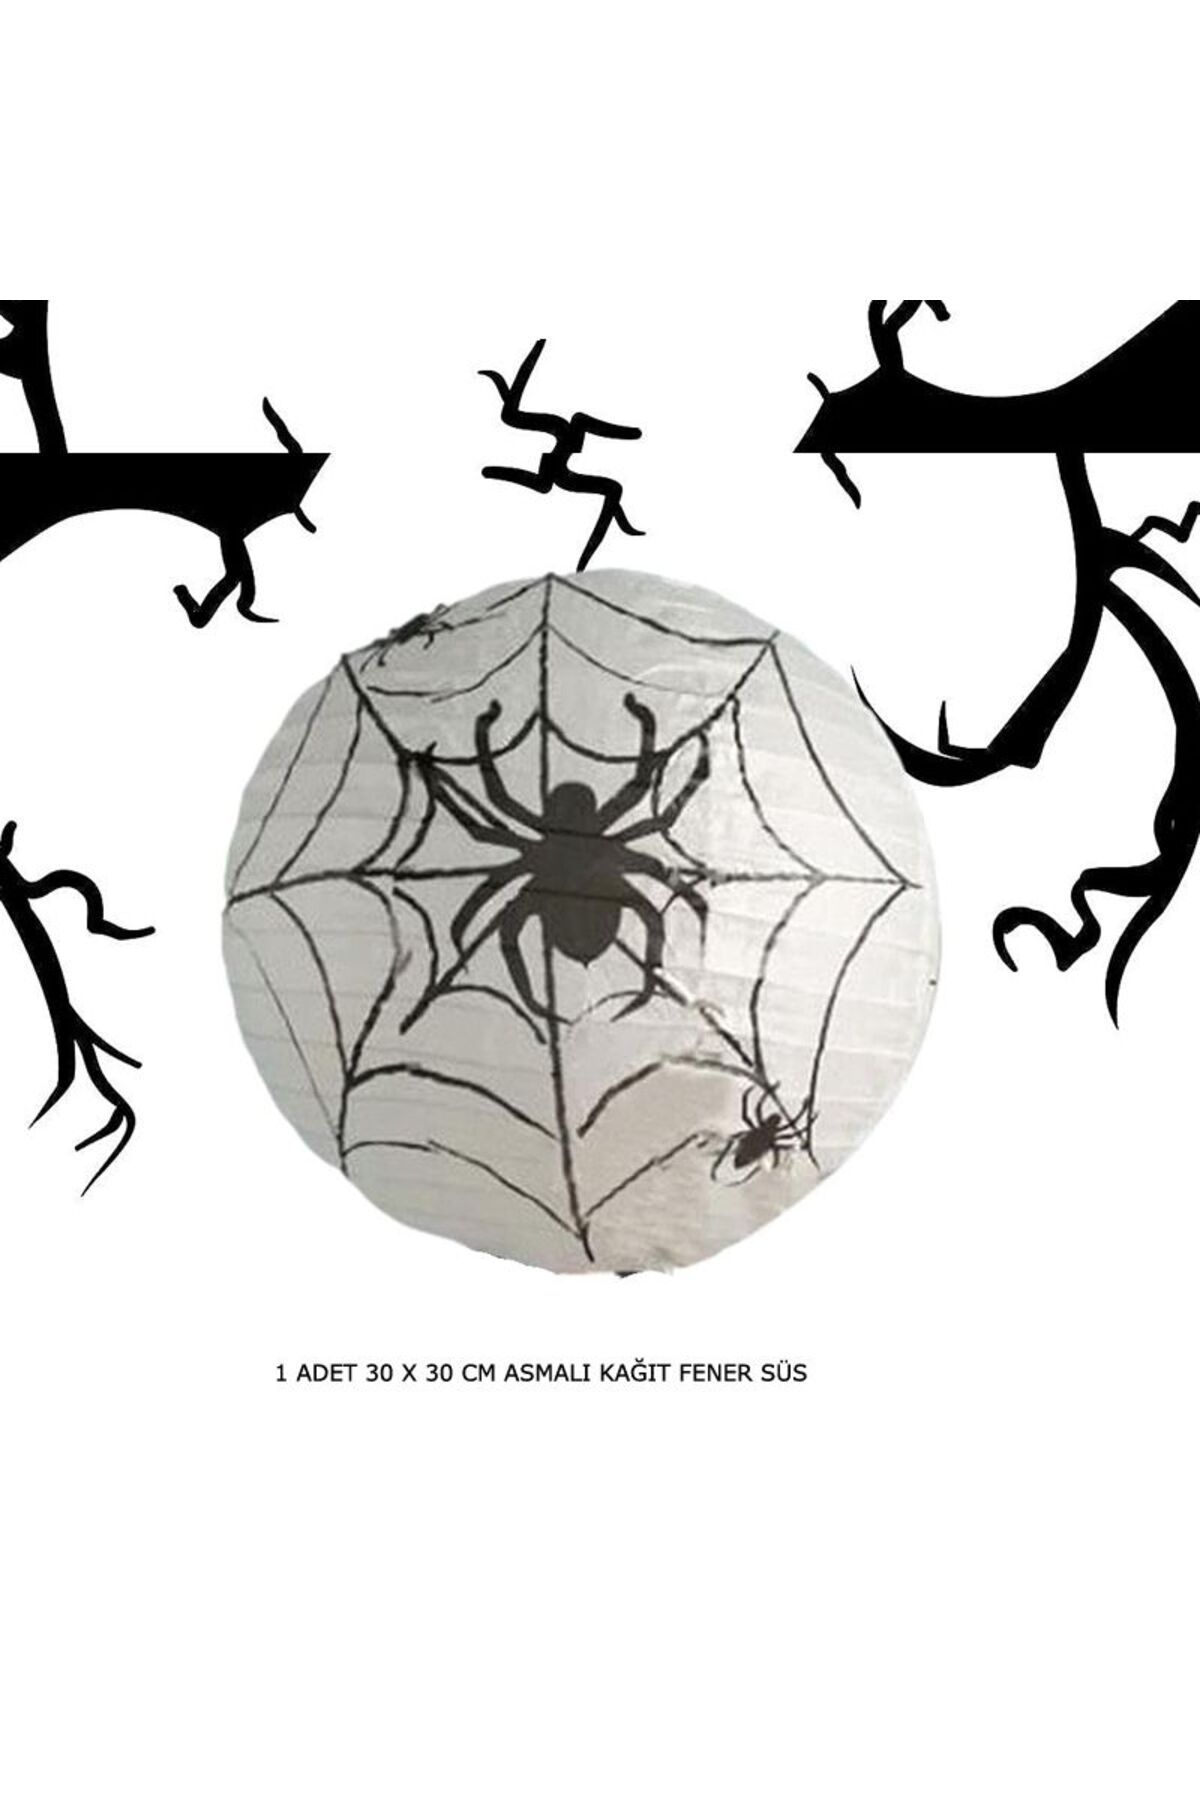 partidolu Halloween 30 Cm Örümcek Ağı Desenli Beyaz Renk Kağıt Japon Feneri 1 Adet